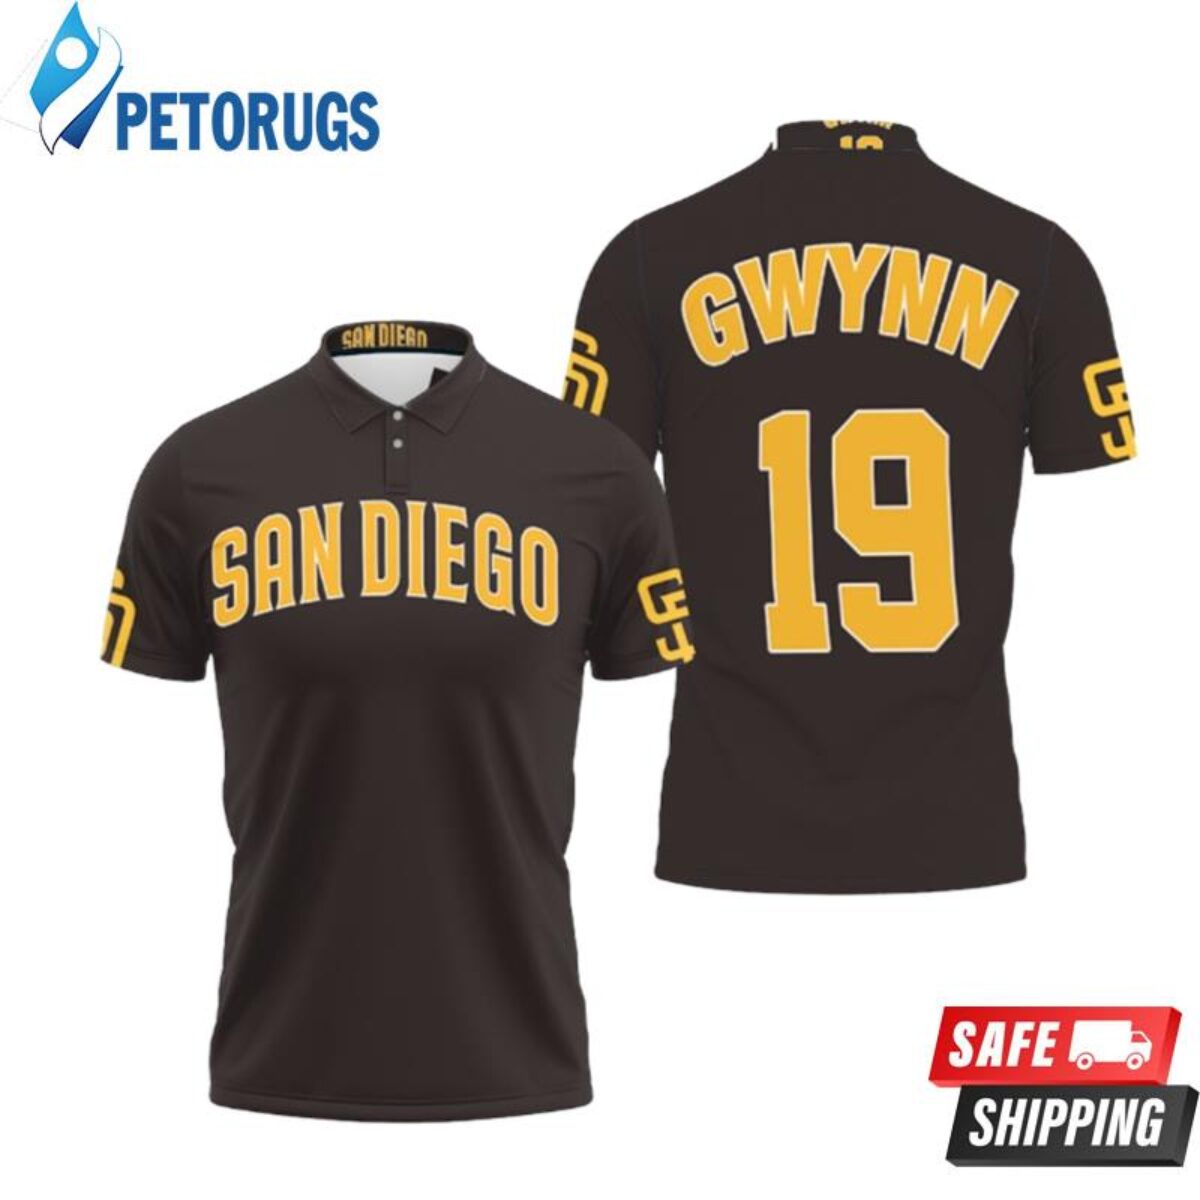 San Diego Padres Tony Gwynn 19 Mlb Dark Brown Inspired Style